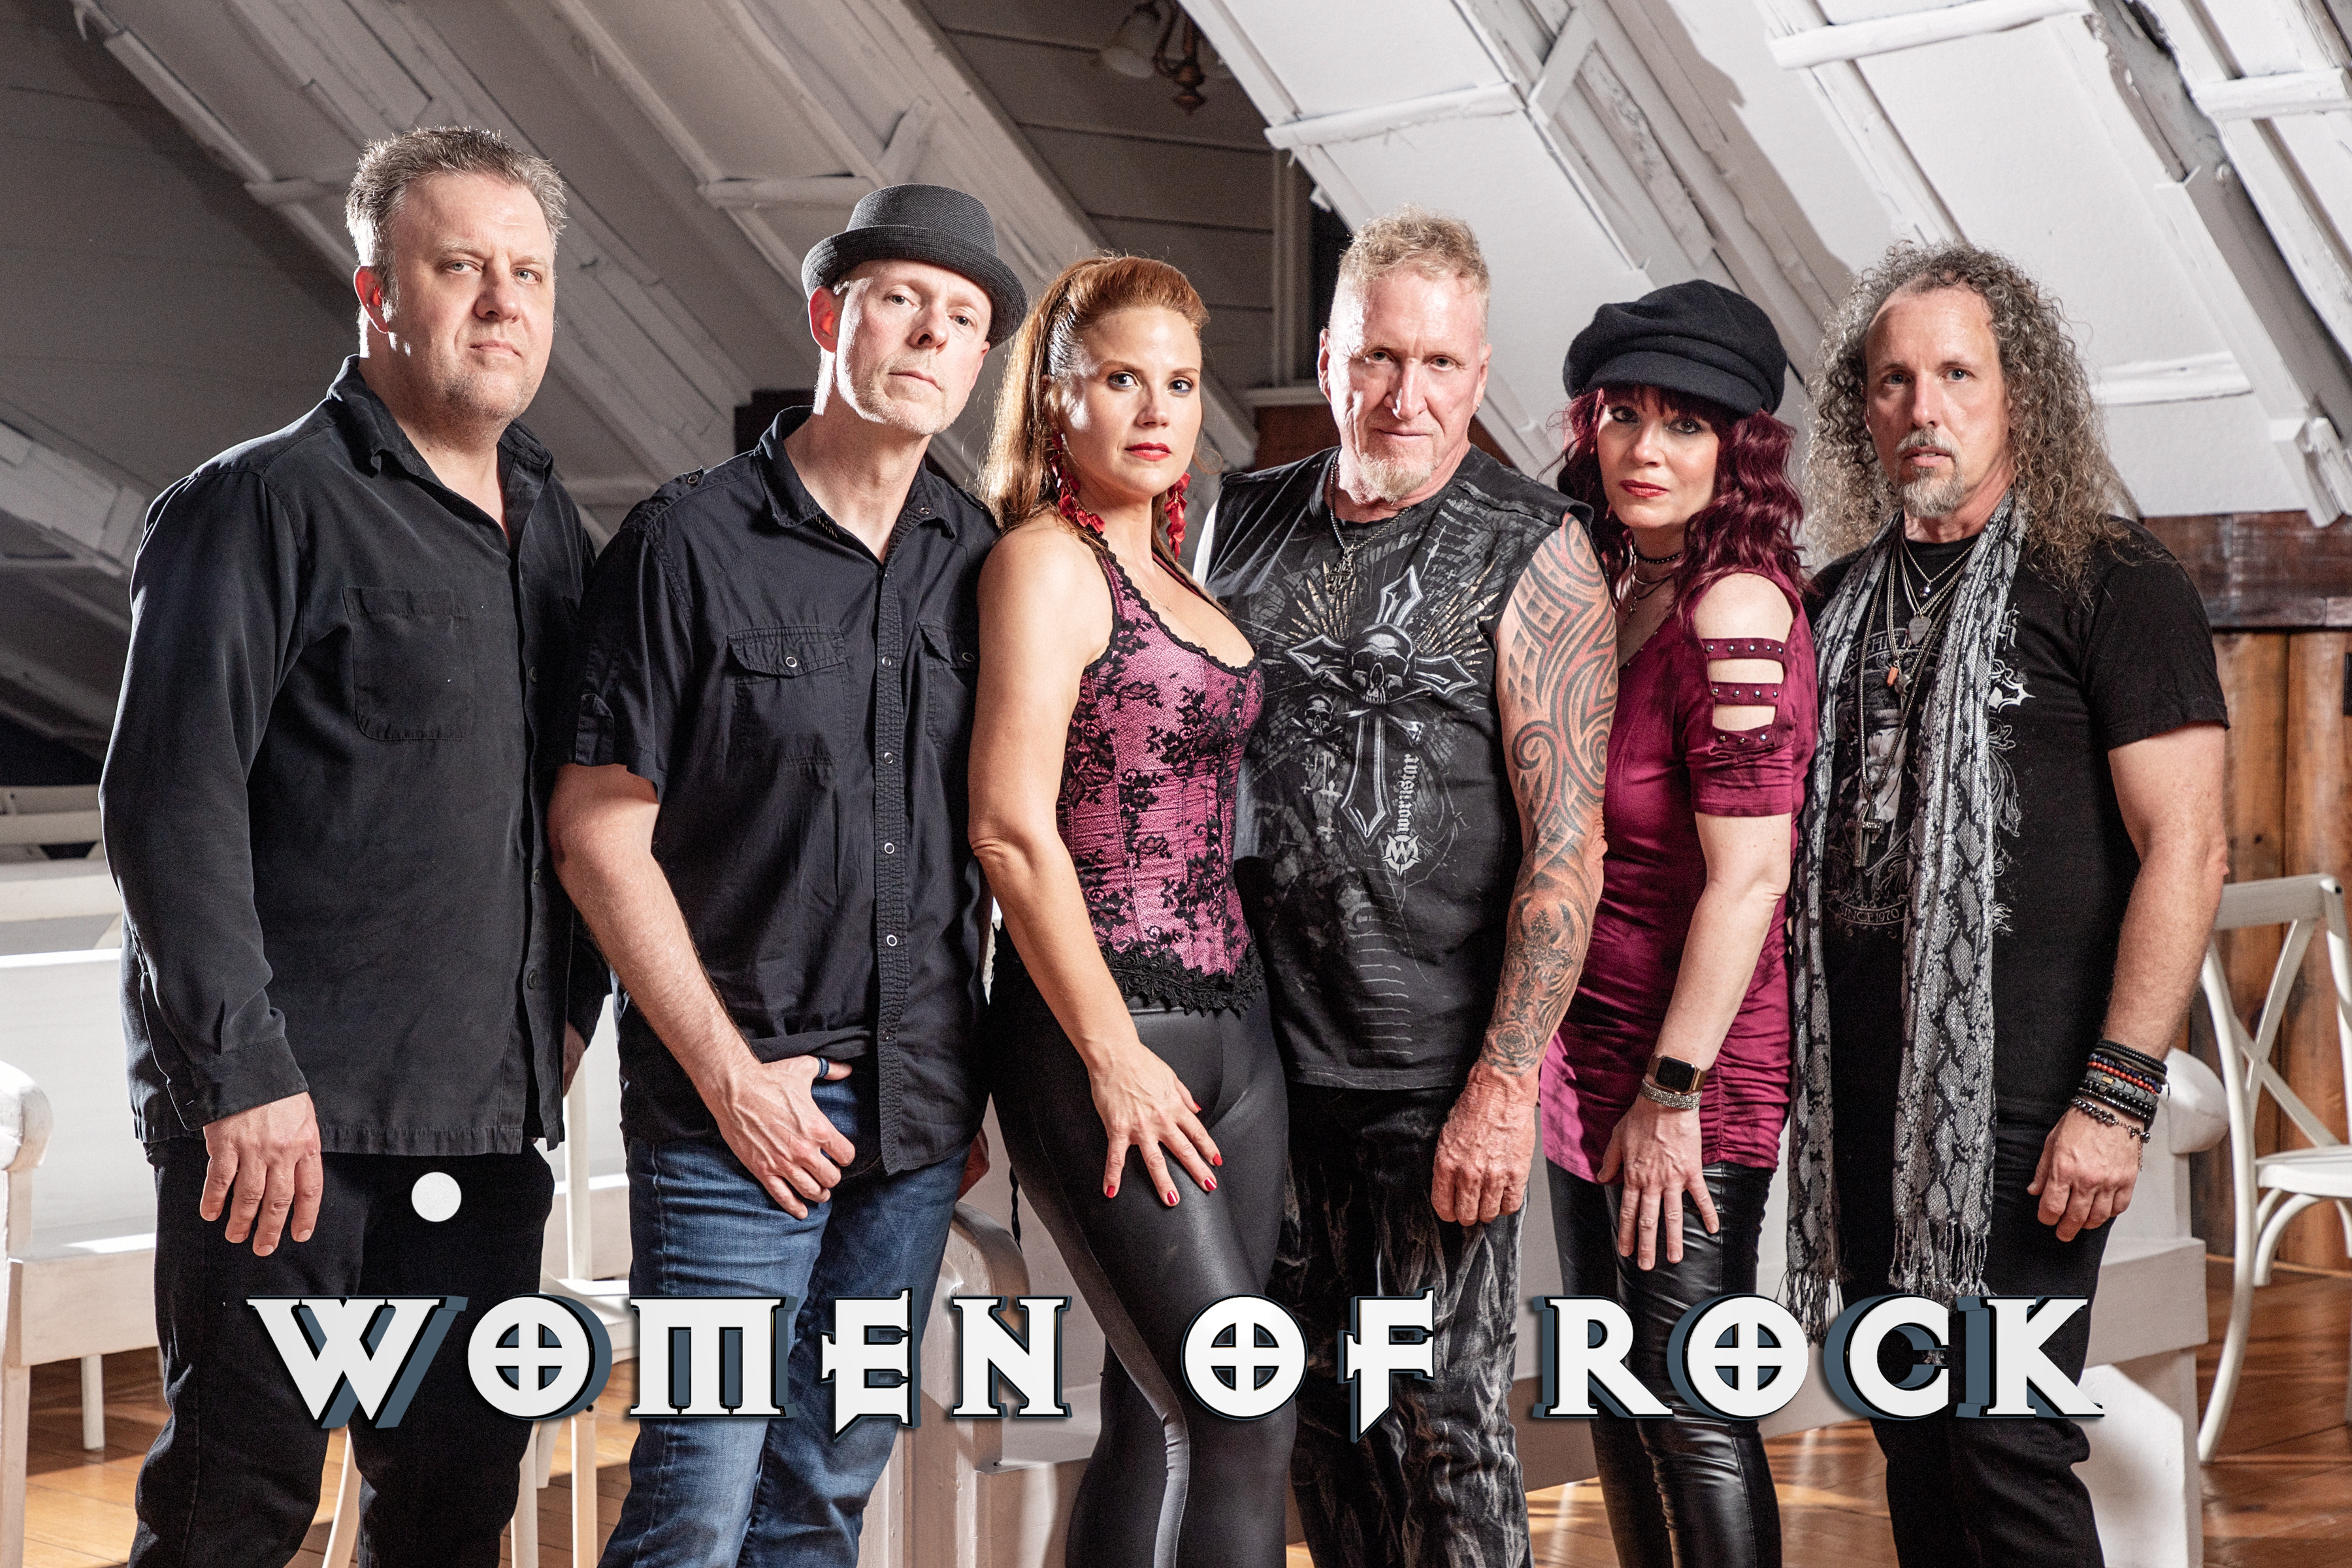 Women of Rock